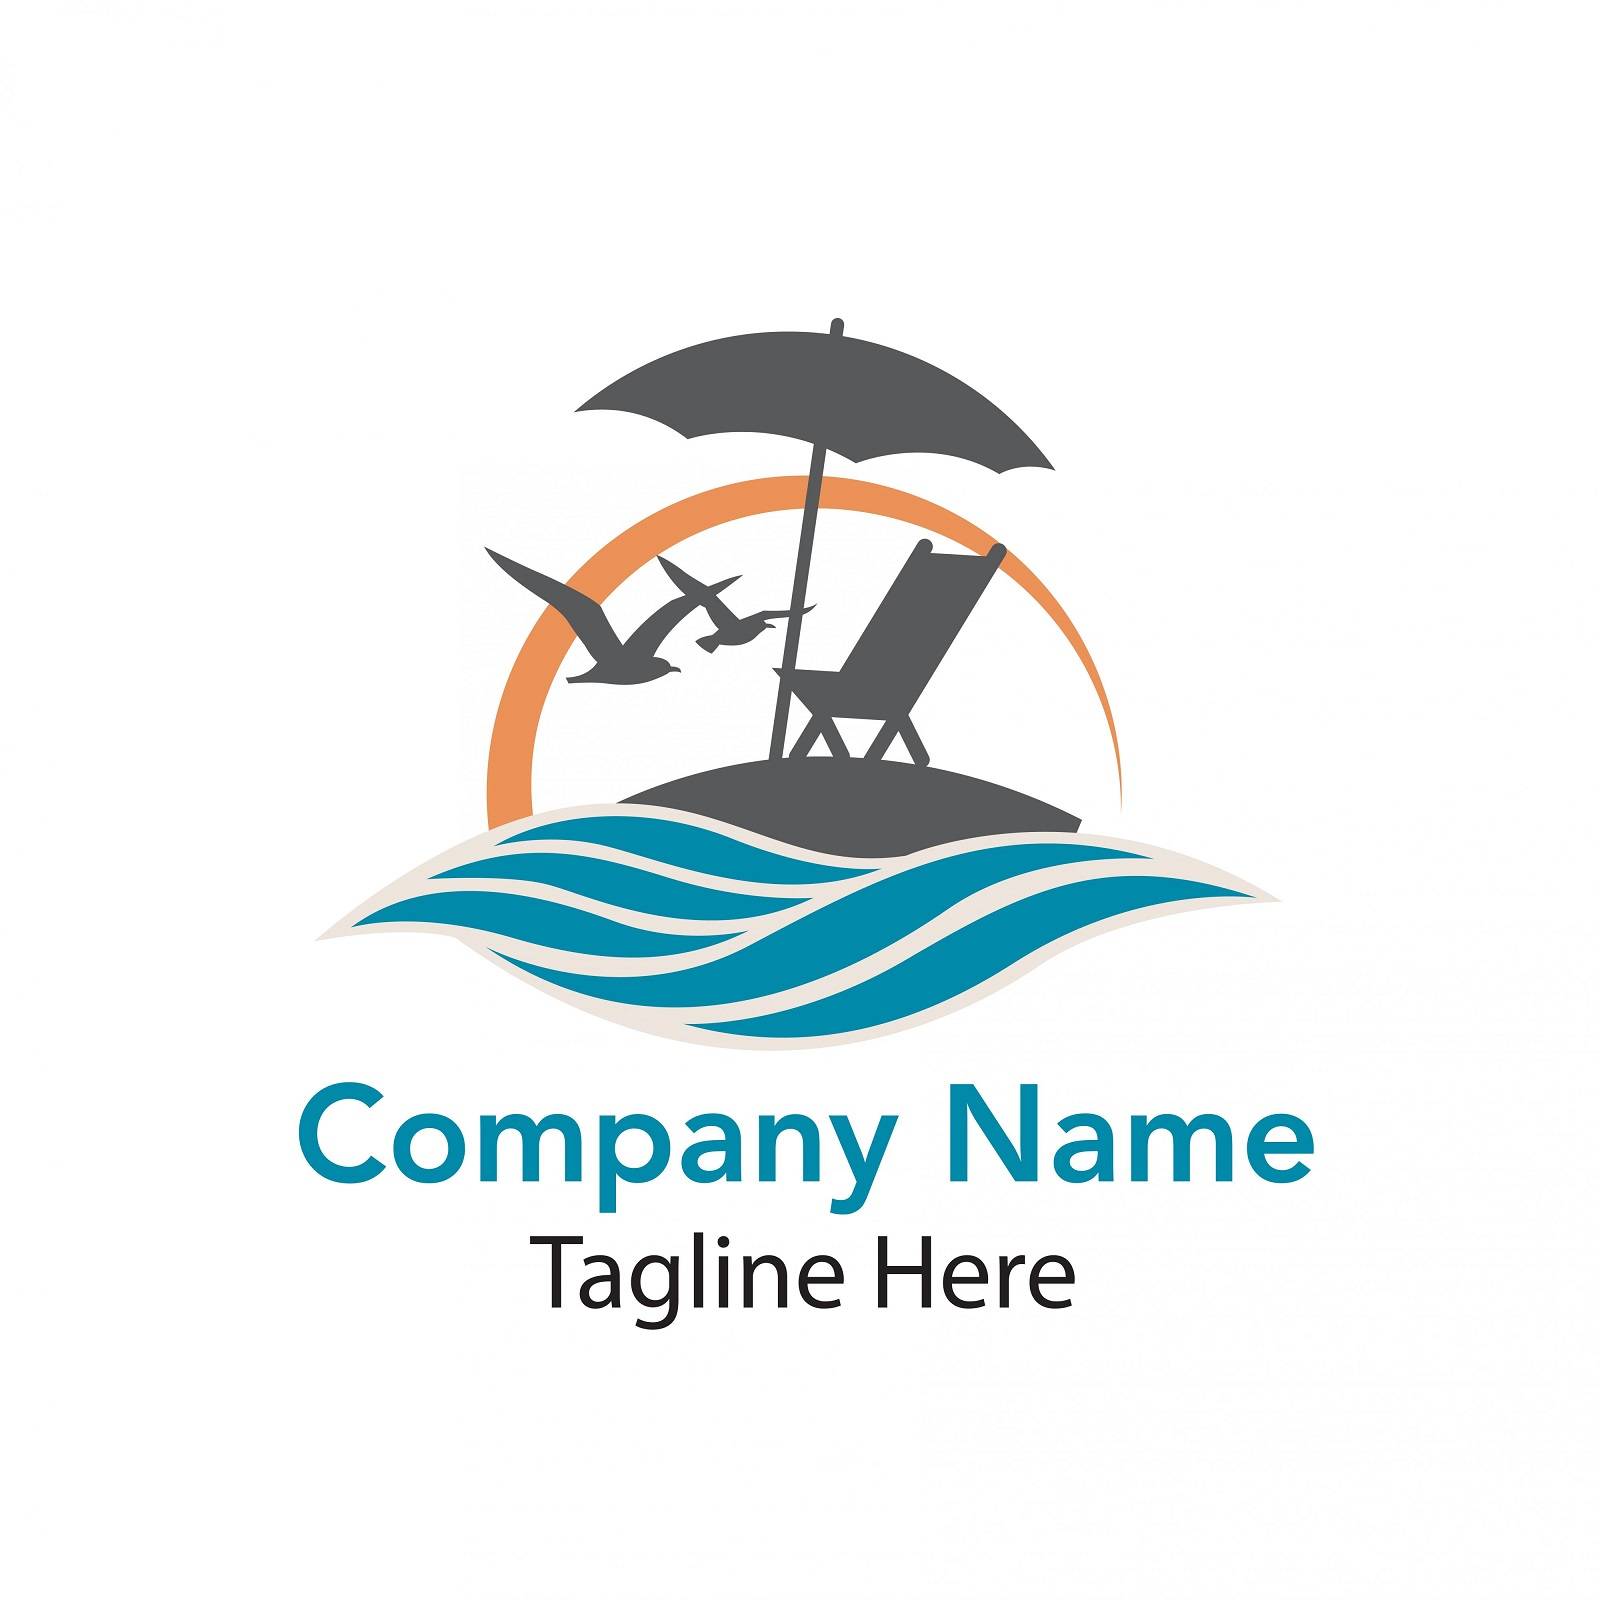 Travel company logo